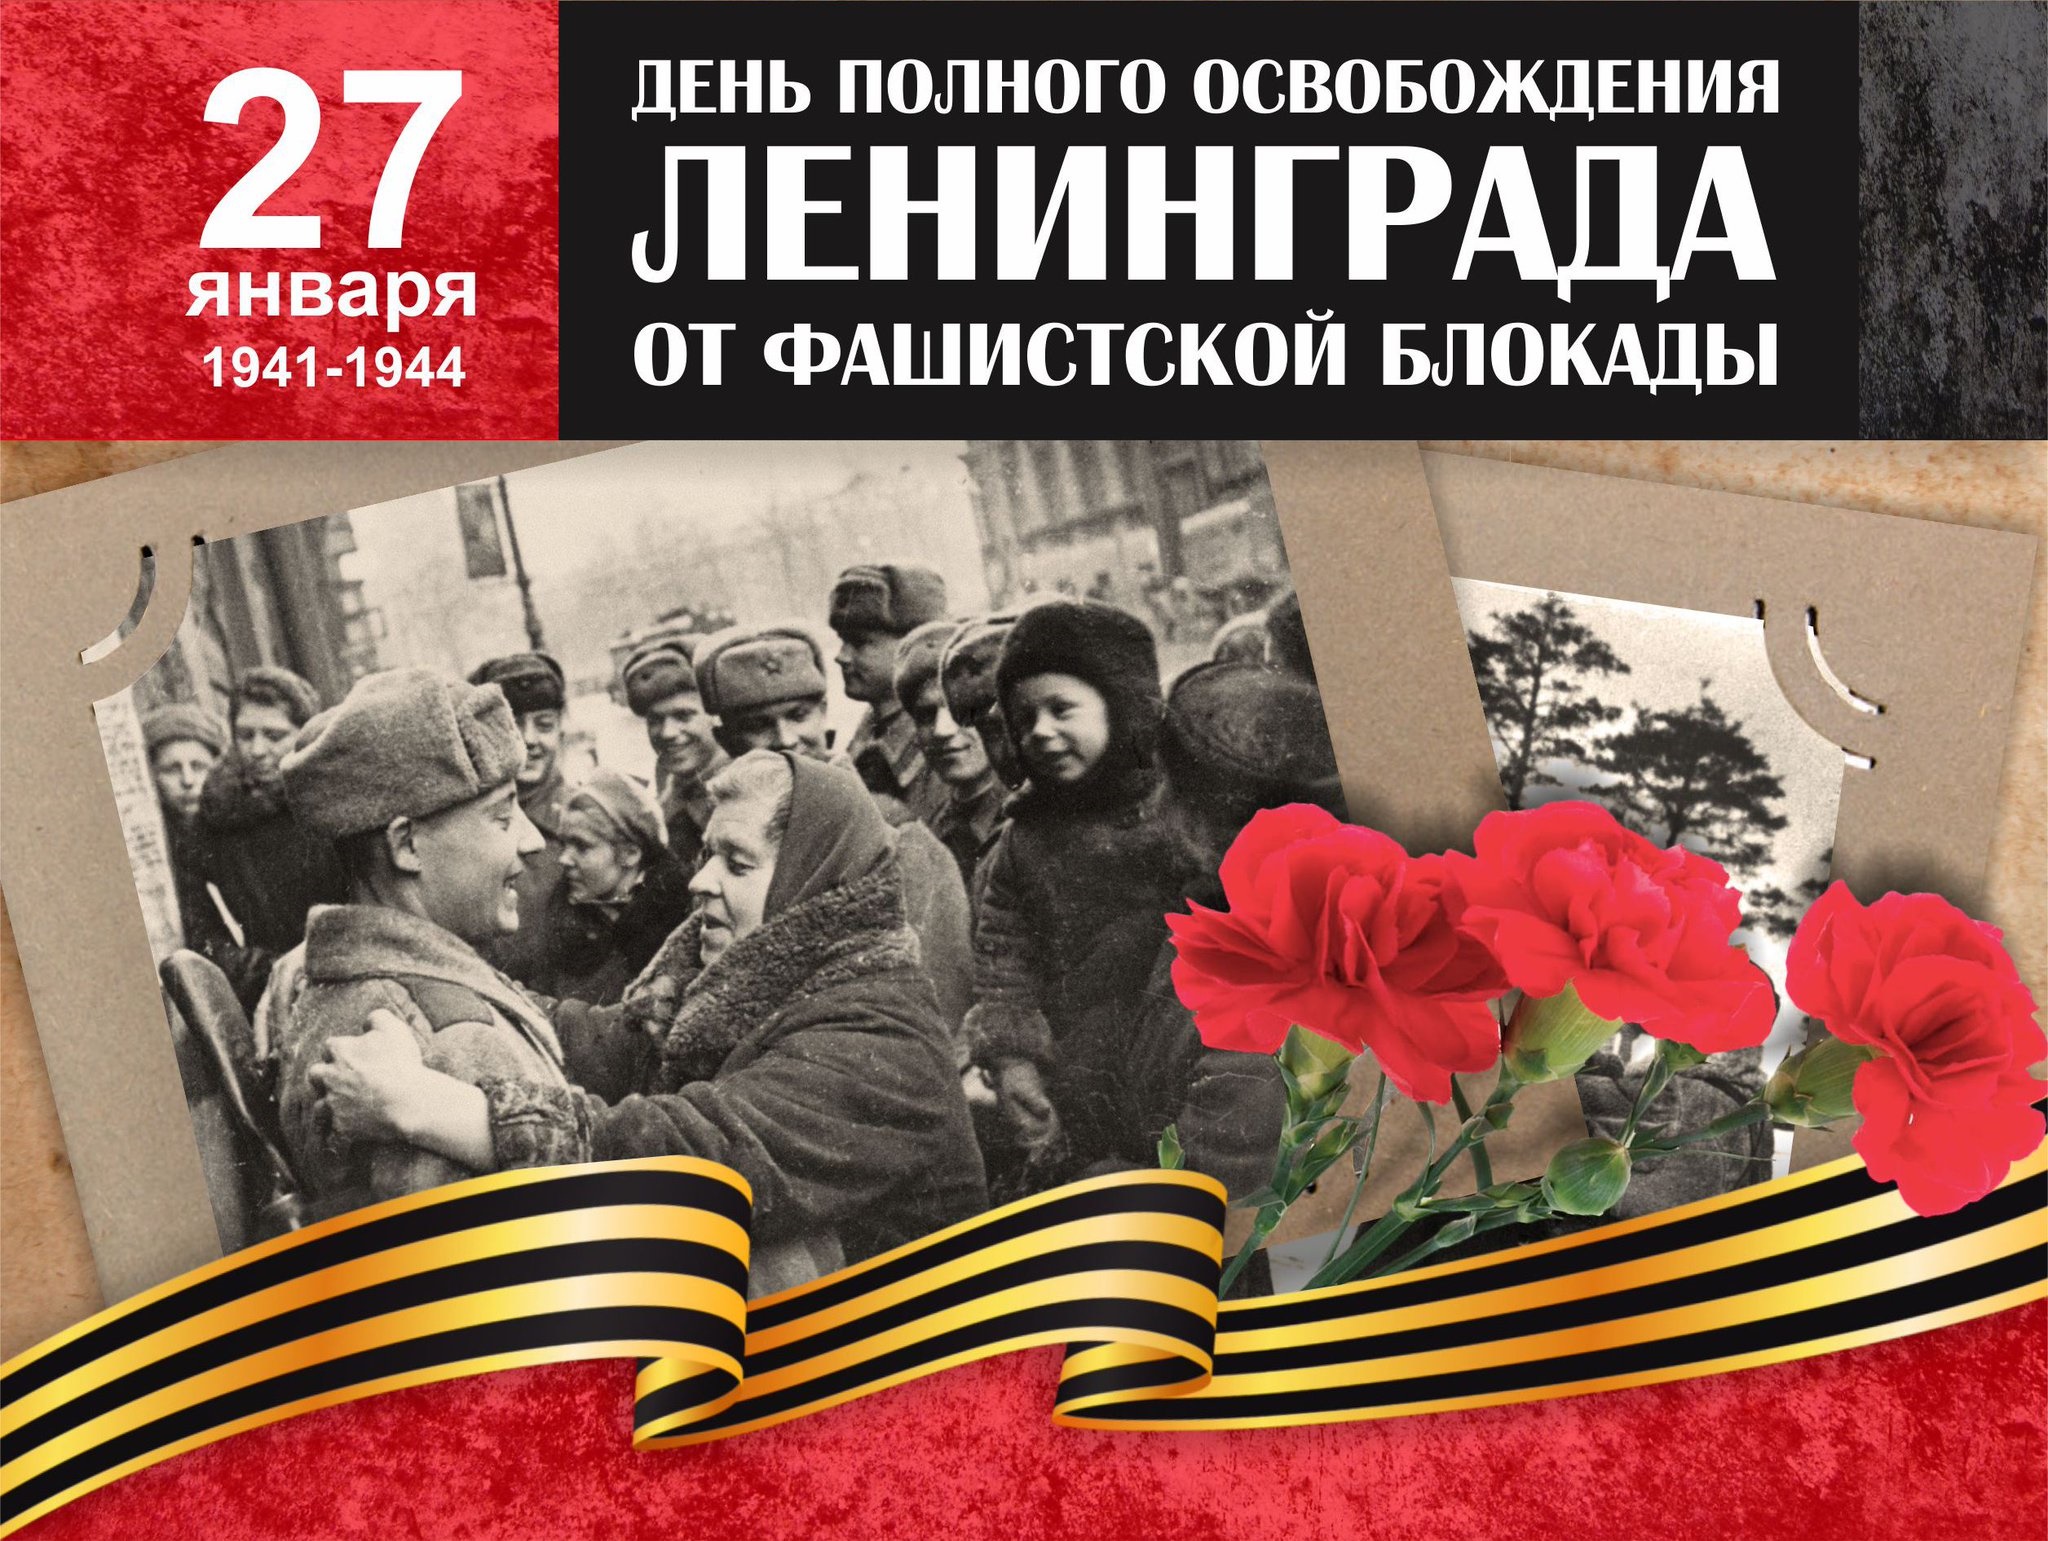 Всероссийская акция, посвящённая Дню полного освобождения Ленинграда от фашистской блокады.